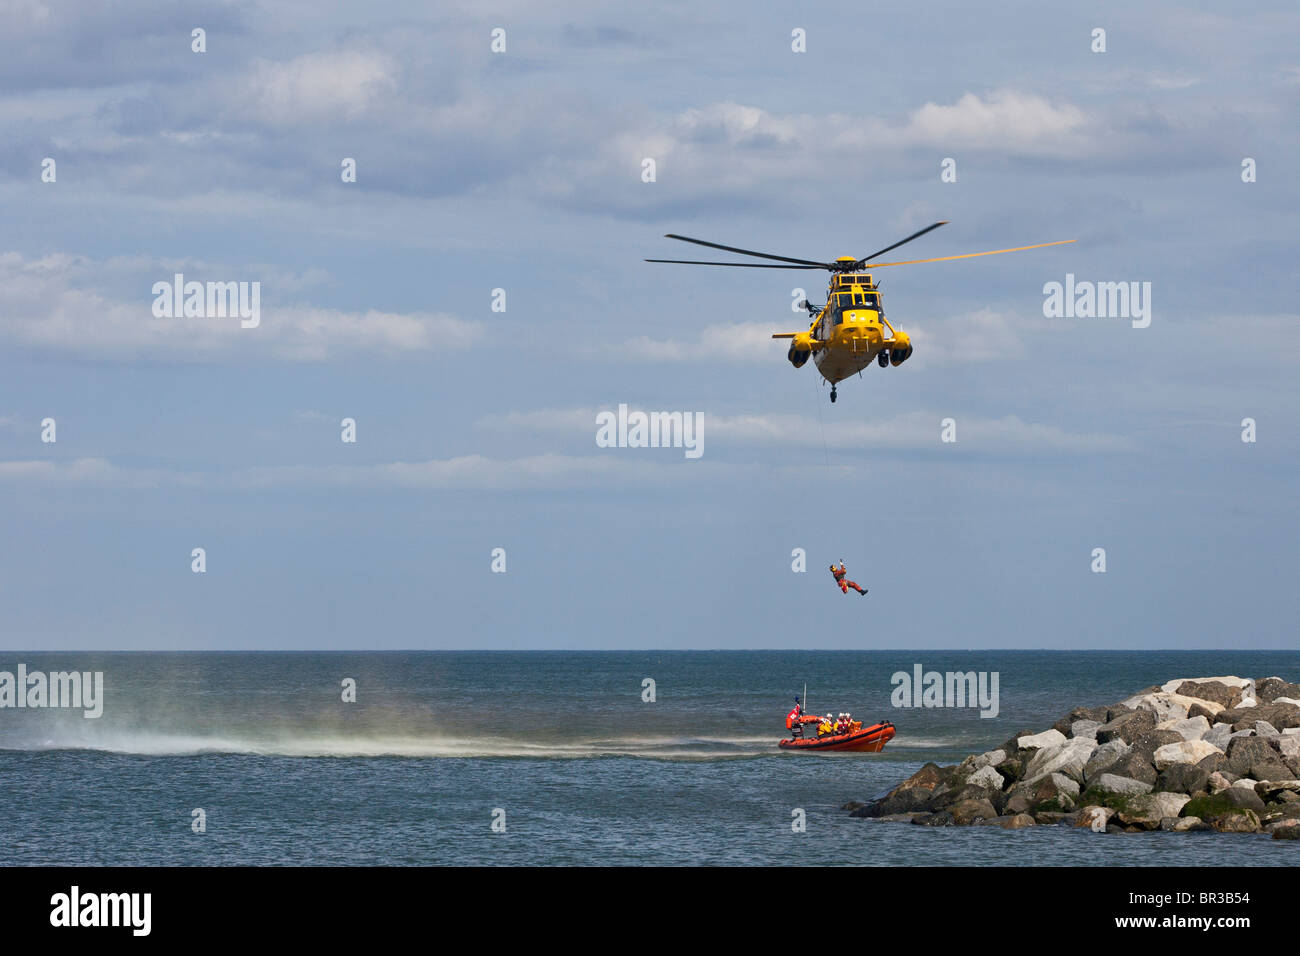 RAF Mar Rey, baja un helicóptero de rescate winchman sobre a esperar un salvavidas RNLI de bajura. Foto de stock